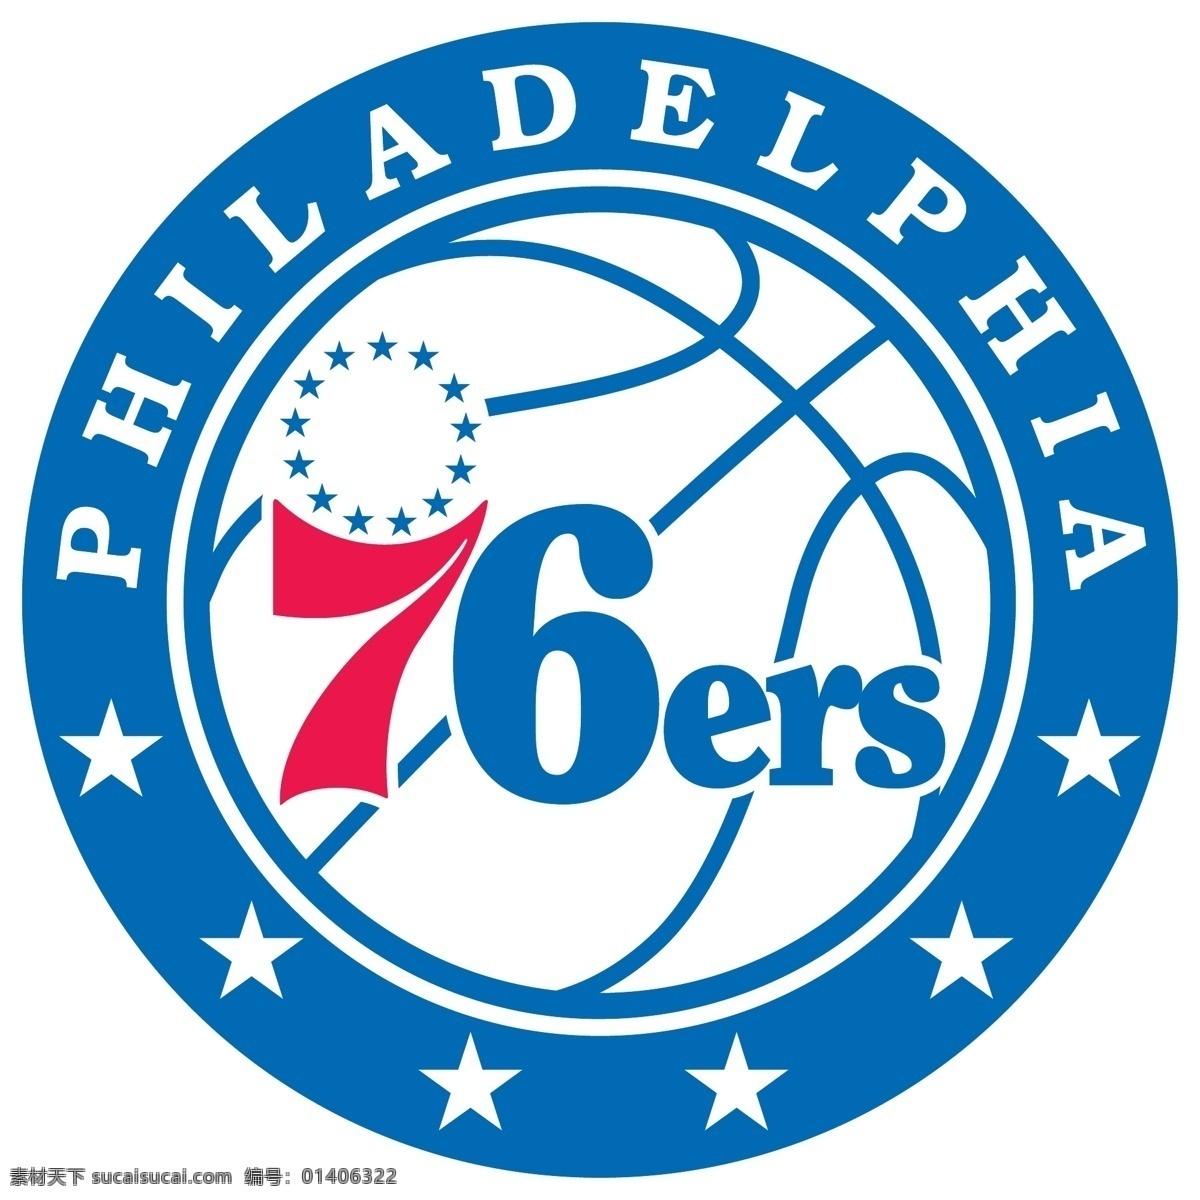 费城 人 队 徽标 76人 nba 东部联盟 大西洋分区 logo设计